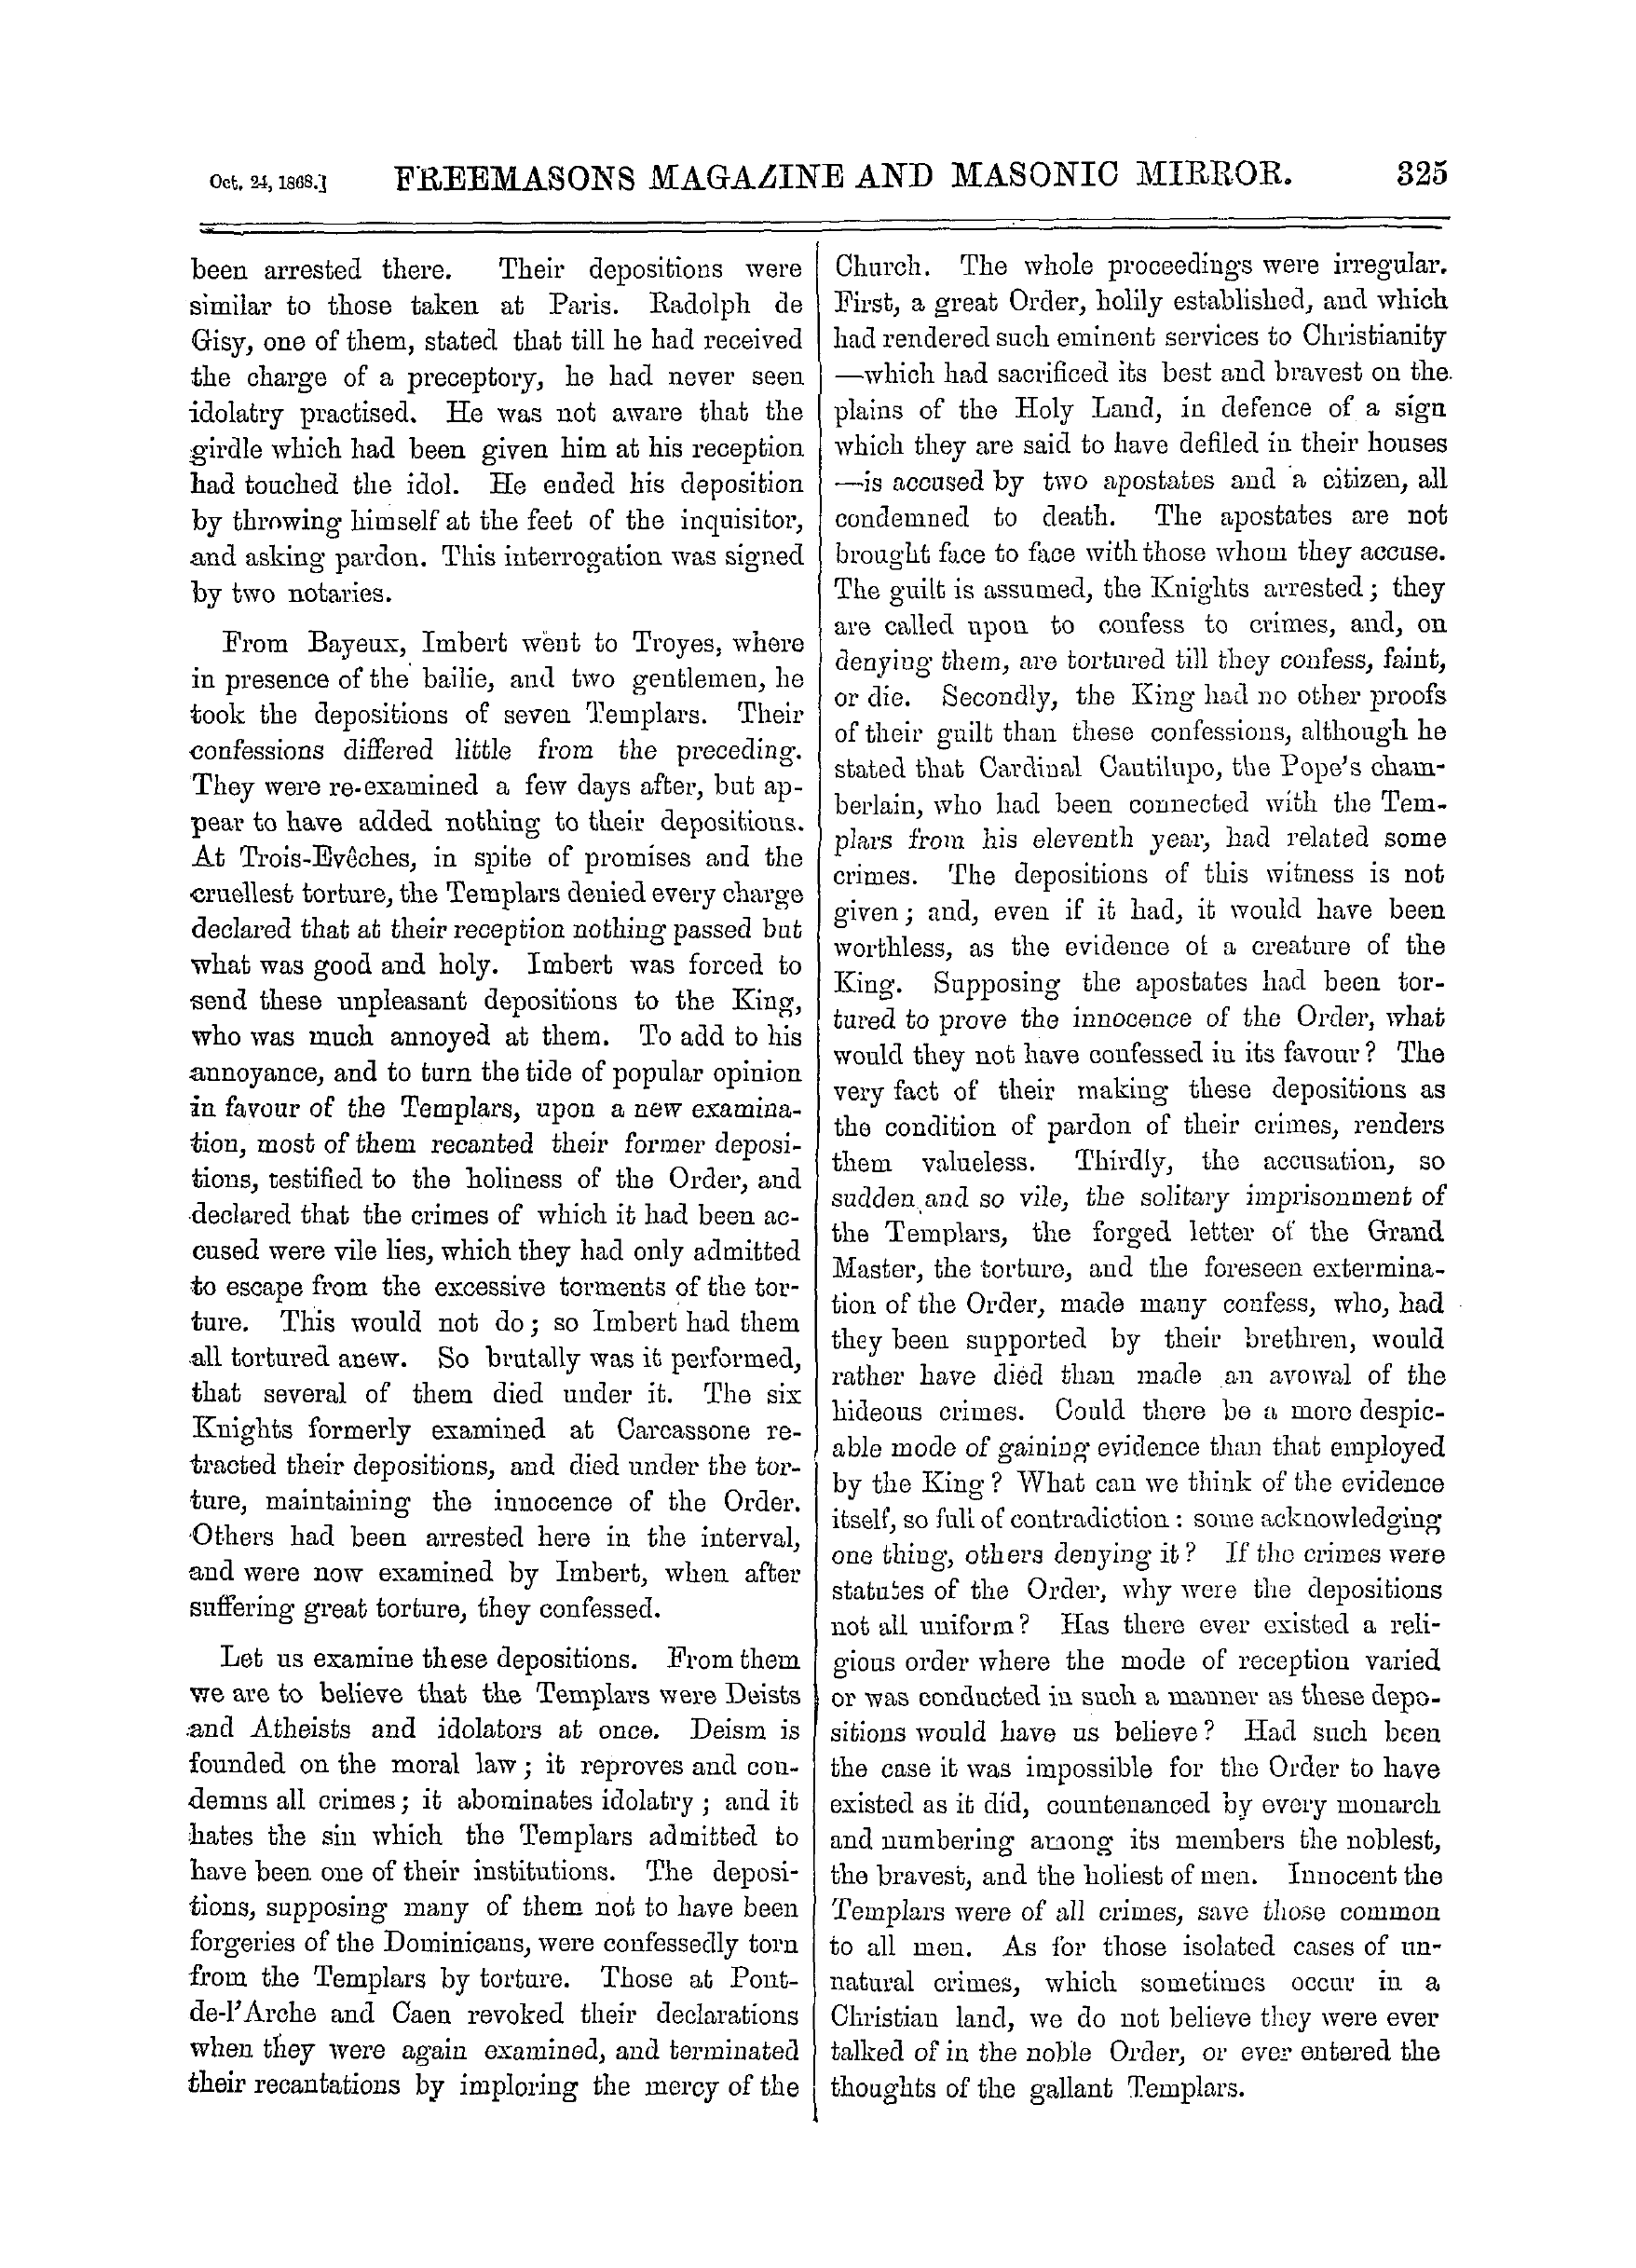 The Freemasons' Monthly Magazine: 1868-10-24: 5